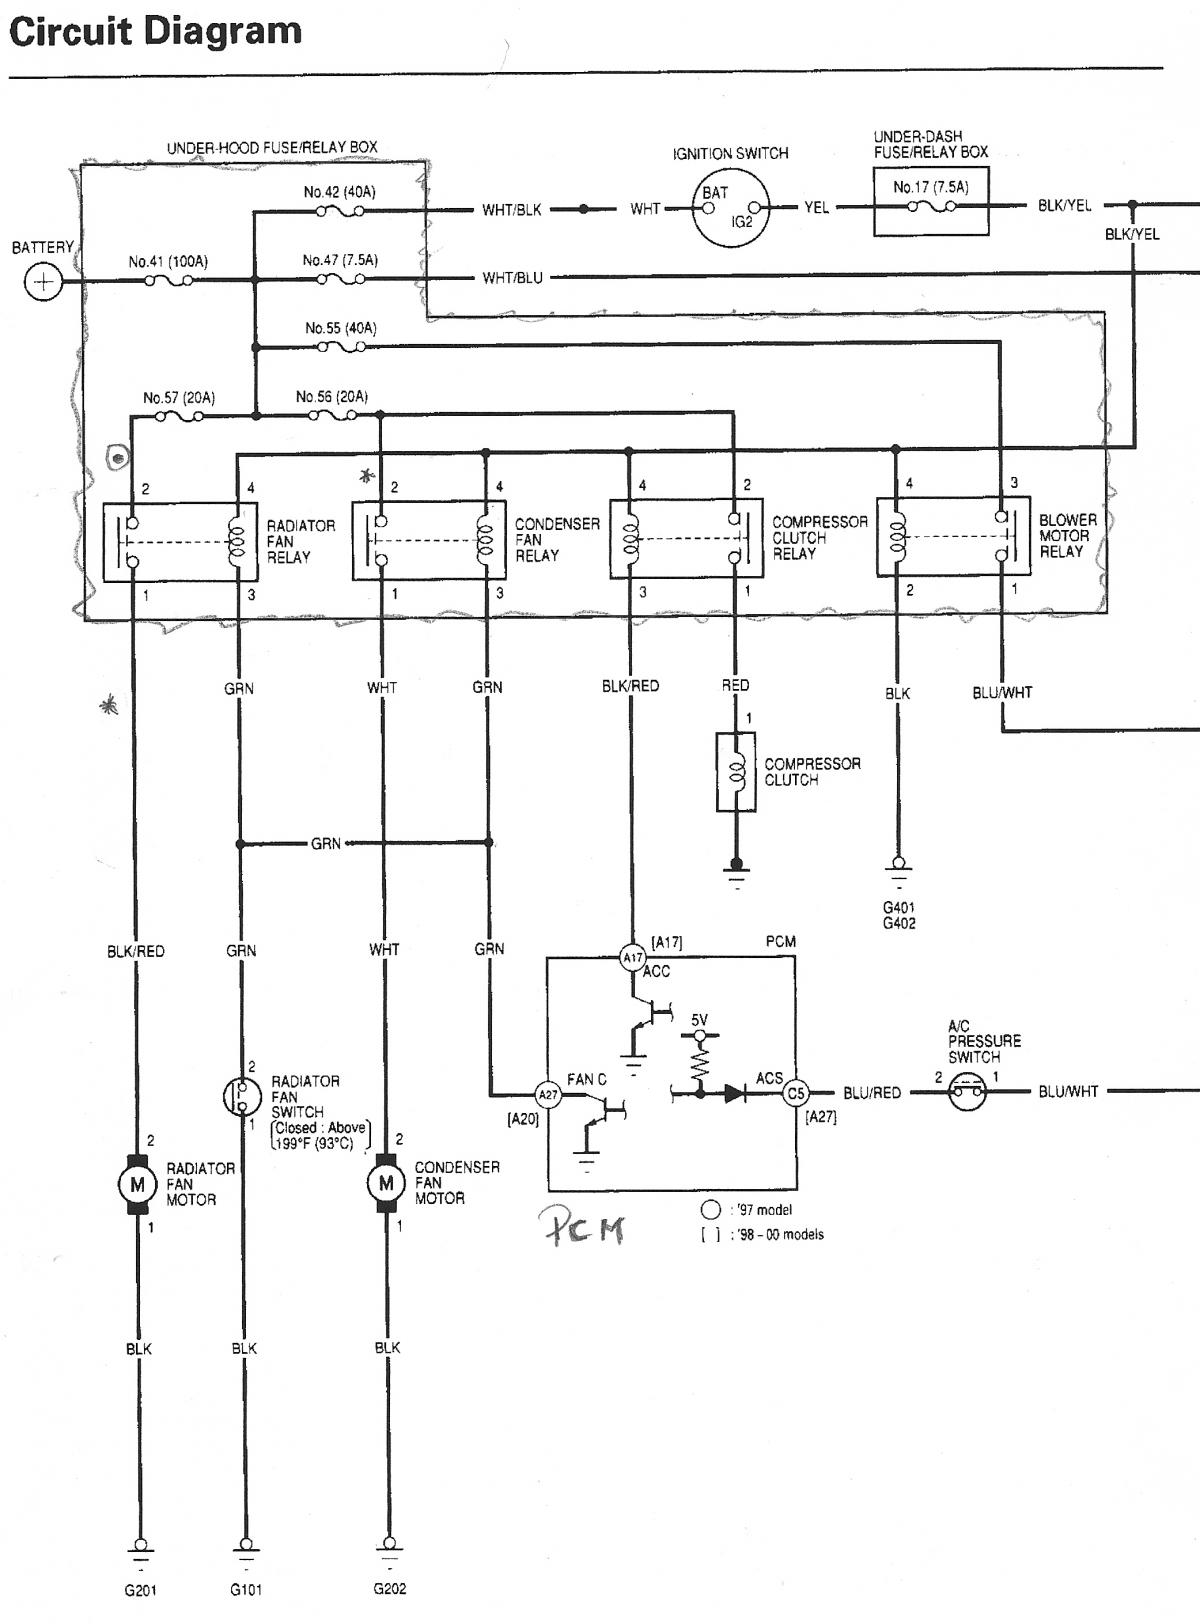 Wiring Diagram For 97 Honda Accord from honda-tech.com